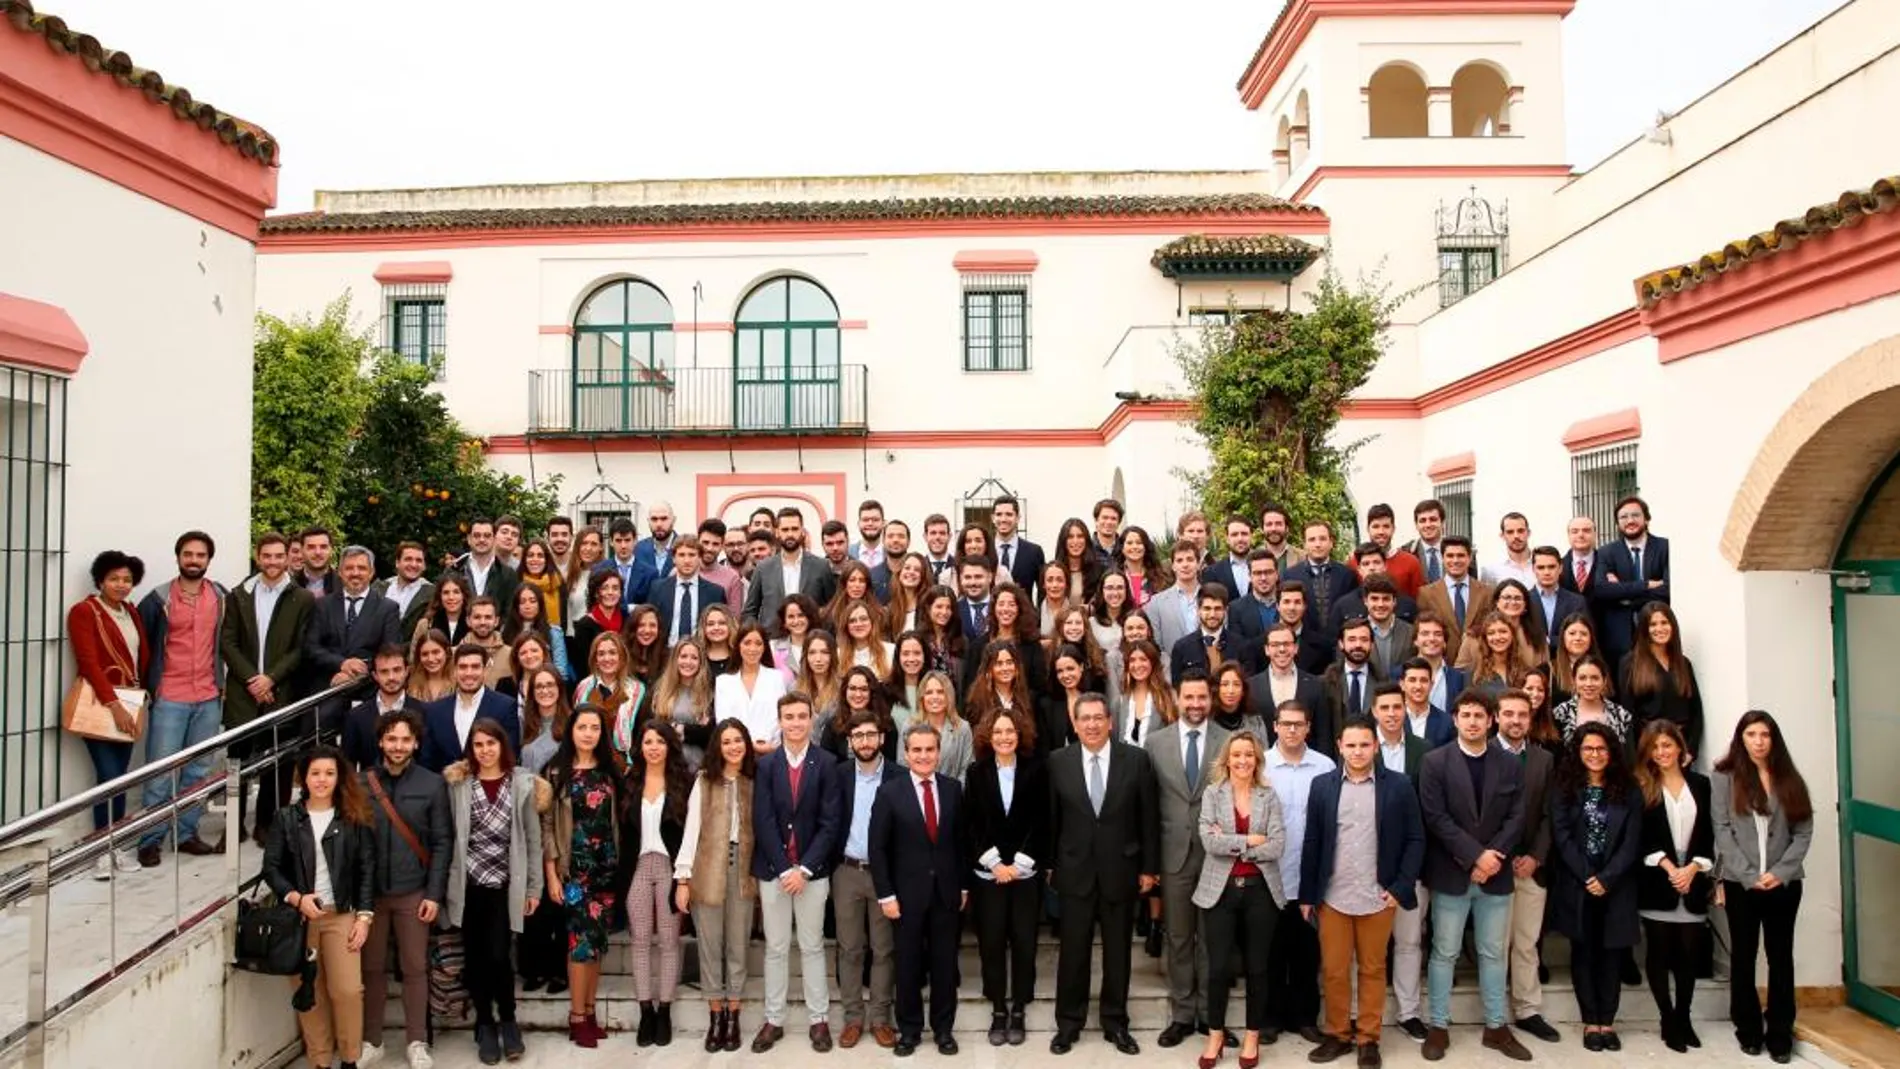 Junto al presidente de la Fundación Cajasol, asistieron la consejera de Conocimiento, Investigación y Universidad de la Junta de Andalucía y el Director Territorial de Andalucía Occidental de Caixabank / Foto: La Razón